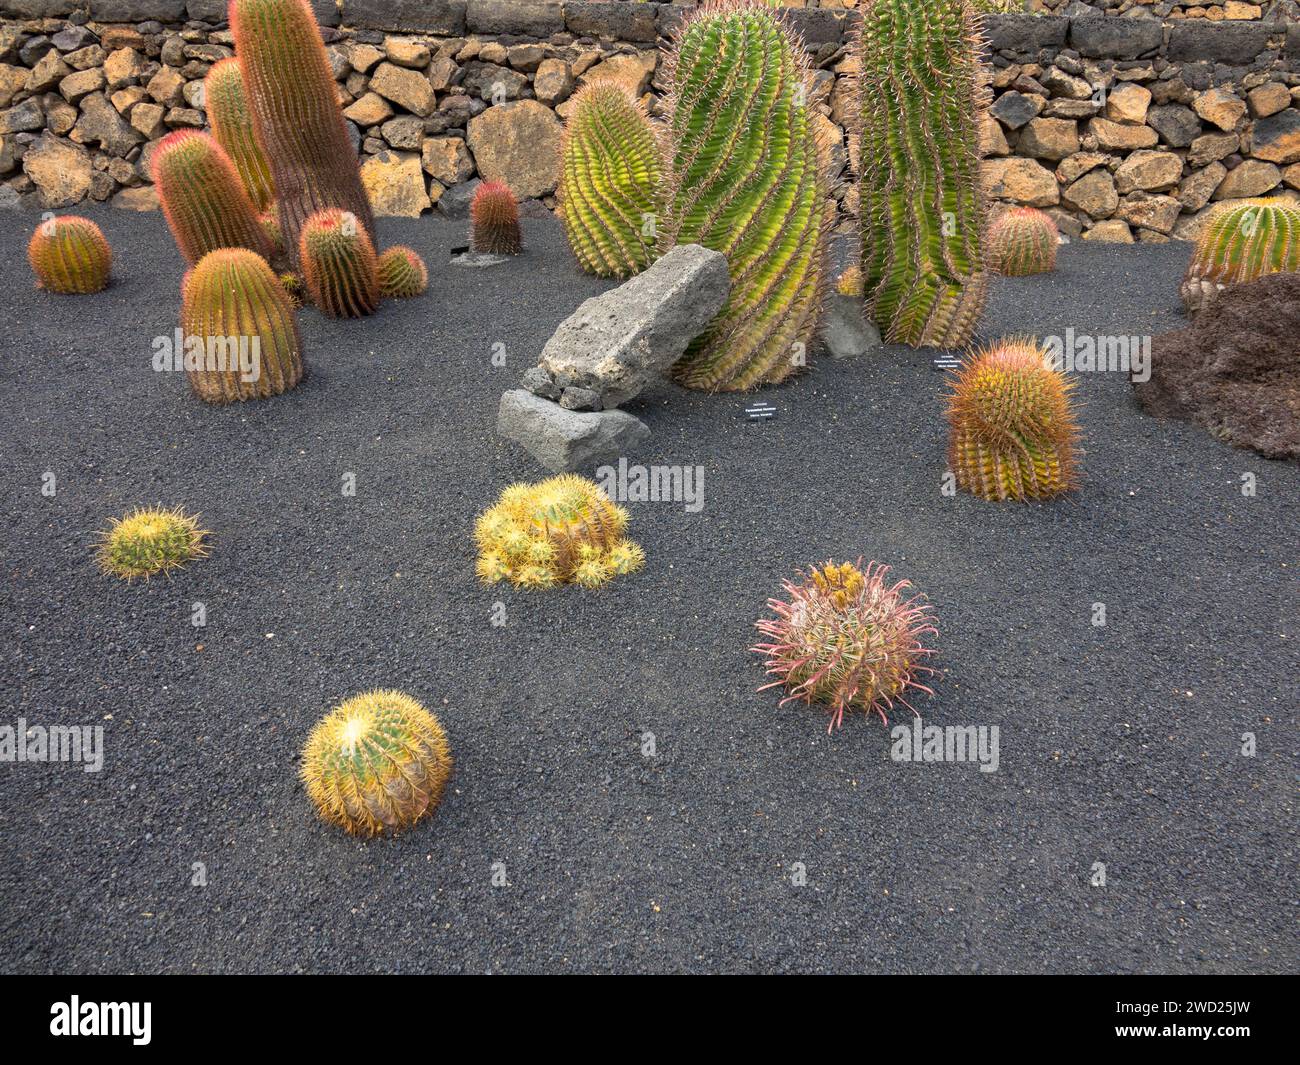 Der Jardín de Cactus ist ein Kaktusgarten im Norden von Guatiza an der Nordostküste Lanzarotes. Beliebte Touristenattraktion. Stockfoto